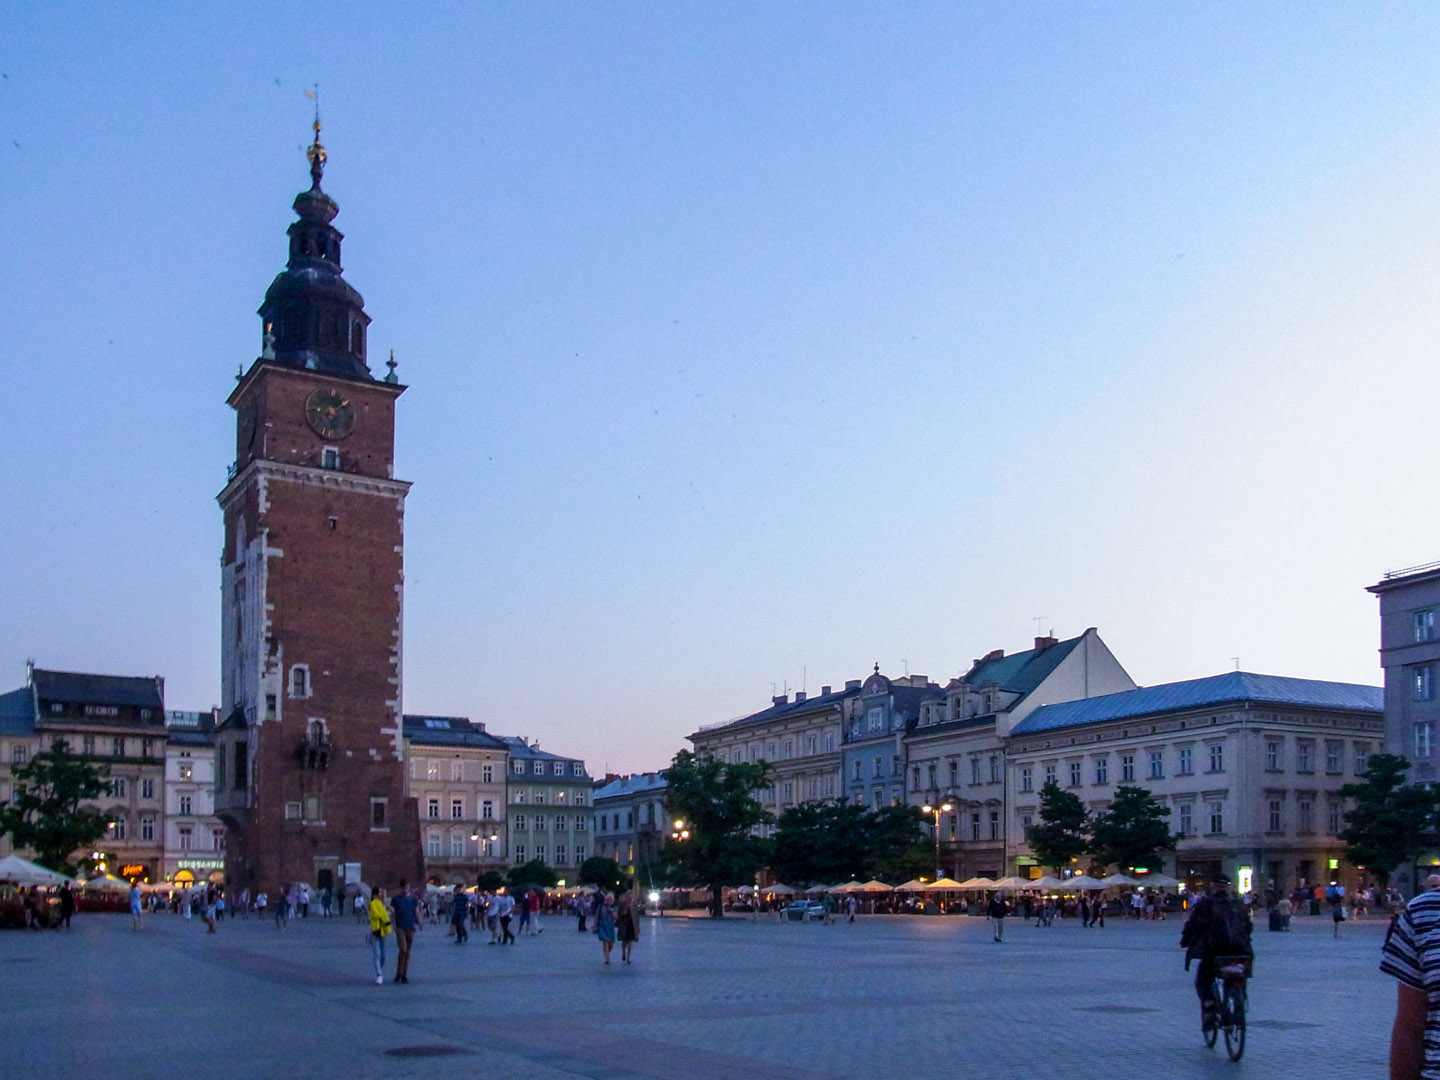 Rynek Główny (main town square) at Sunset